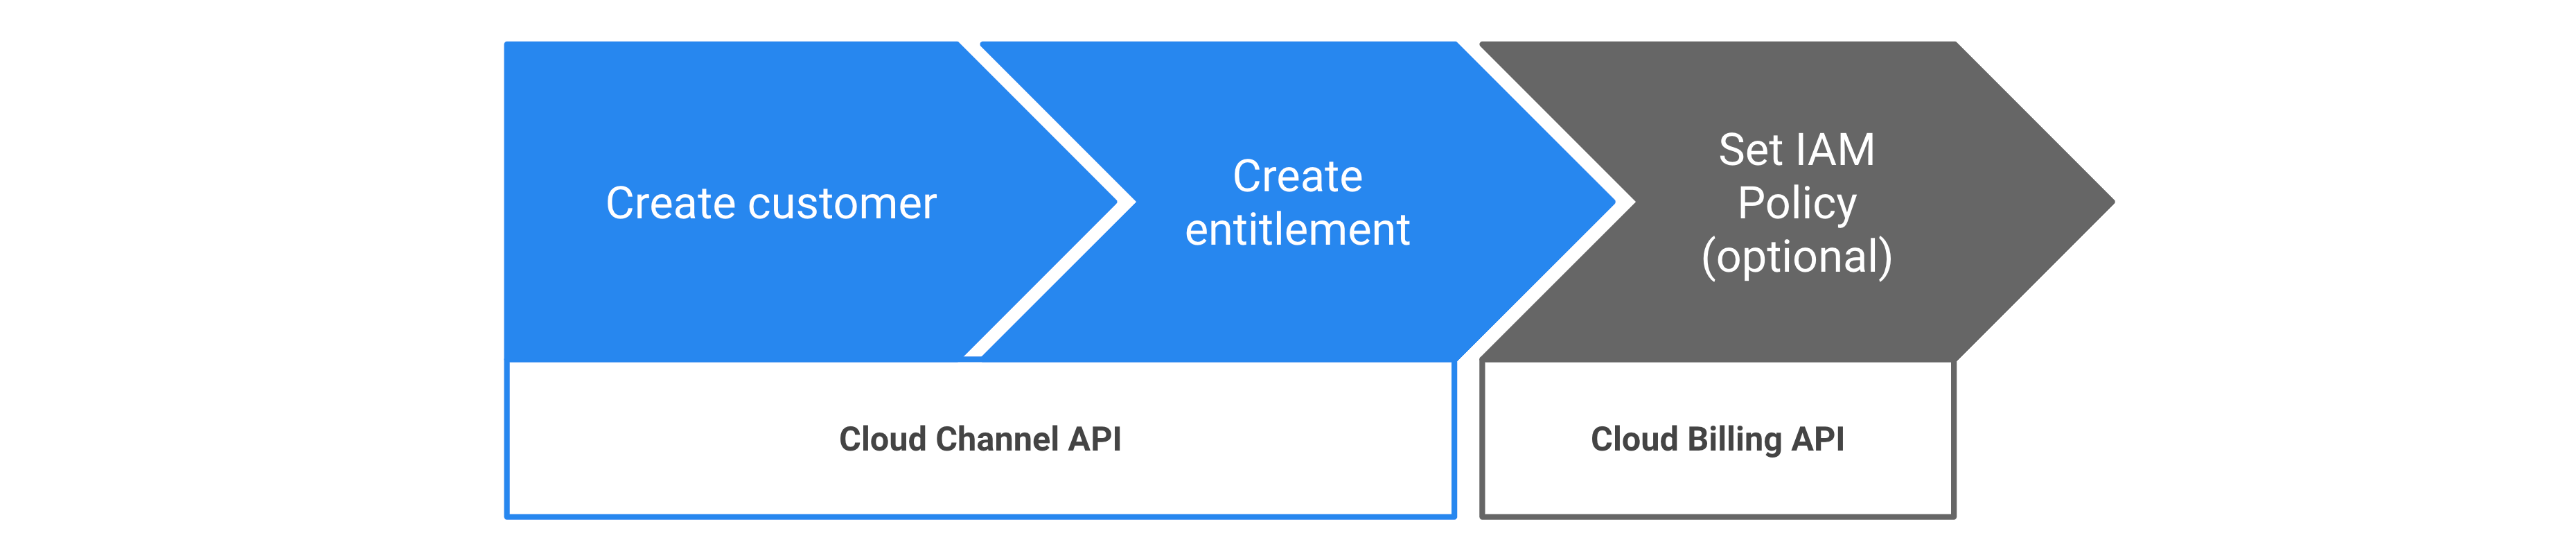 Steps to provision Google Cloud entitlements via Cloud Channel API